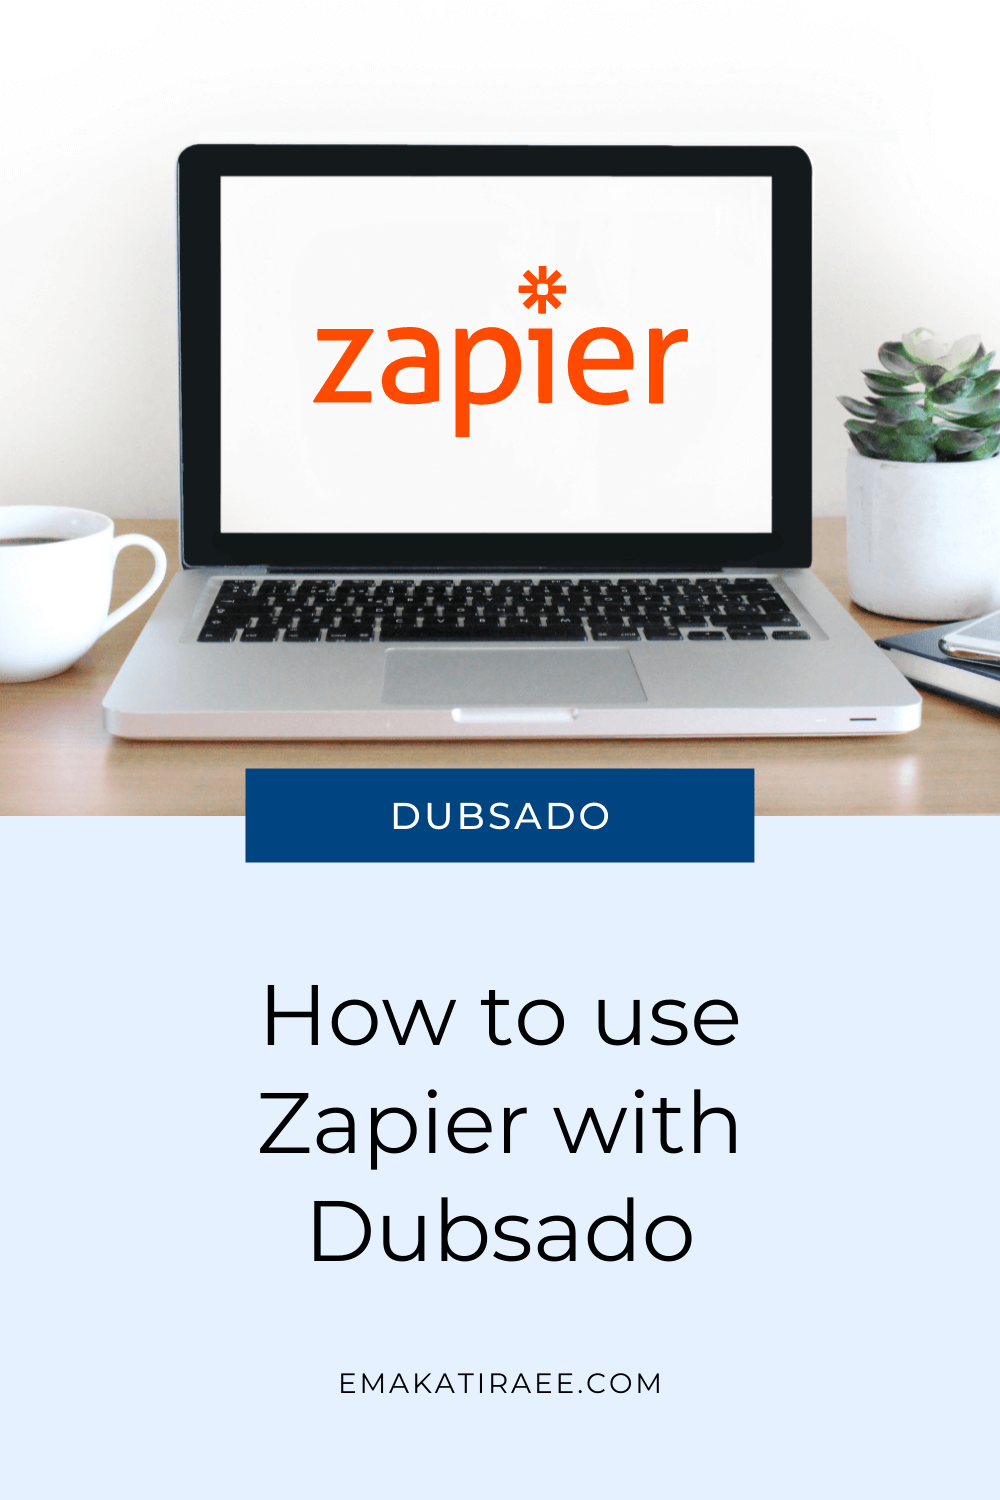 How to use Zapier with Dubsado